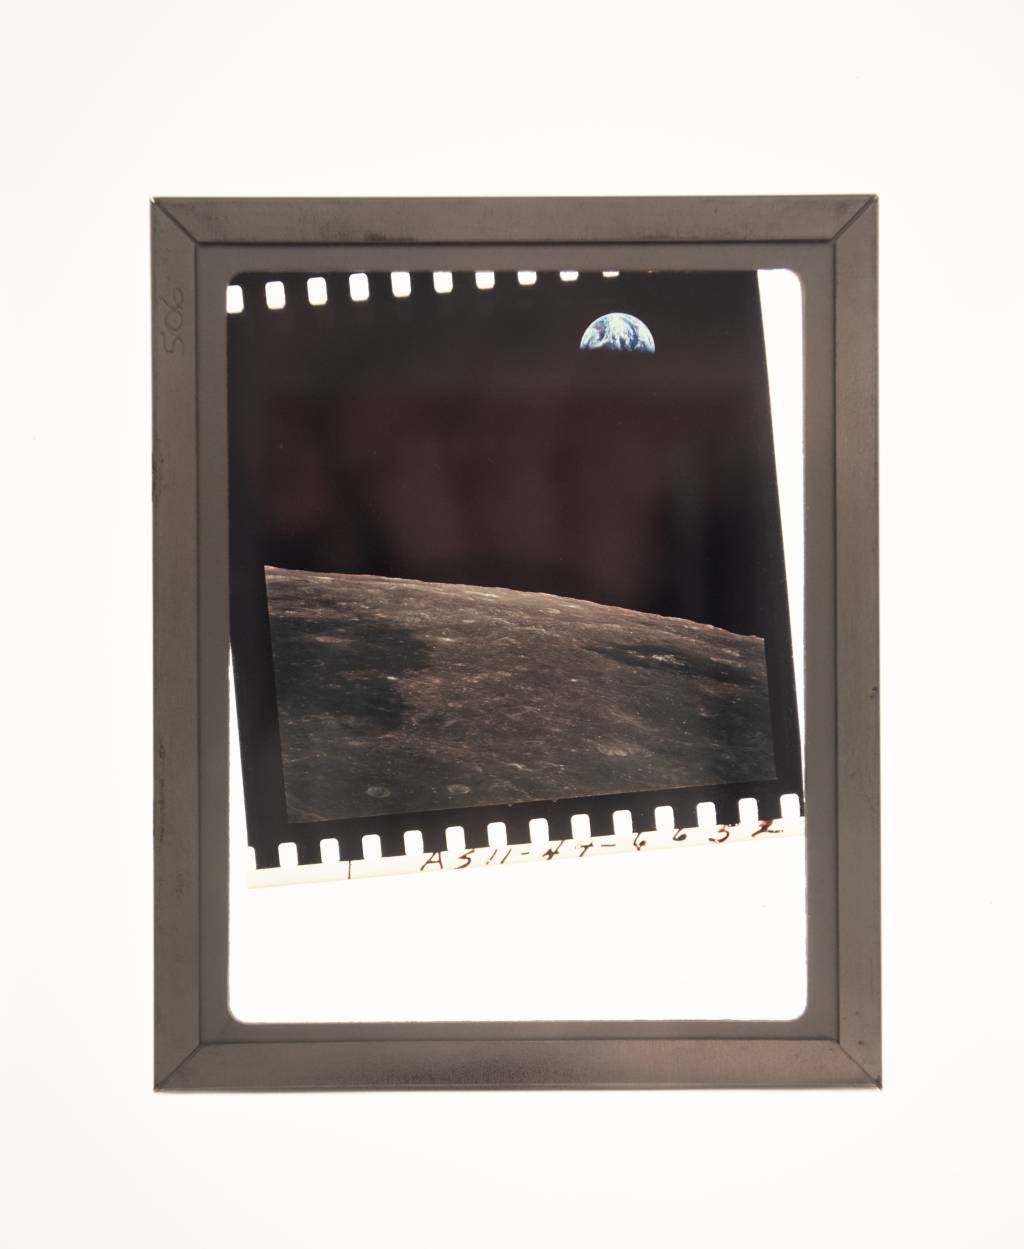 Foto da Lua com Terra no fundo aparece na imagem.